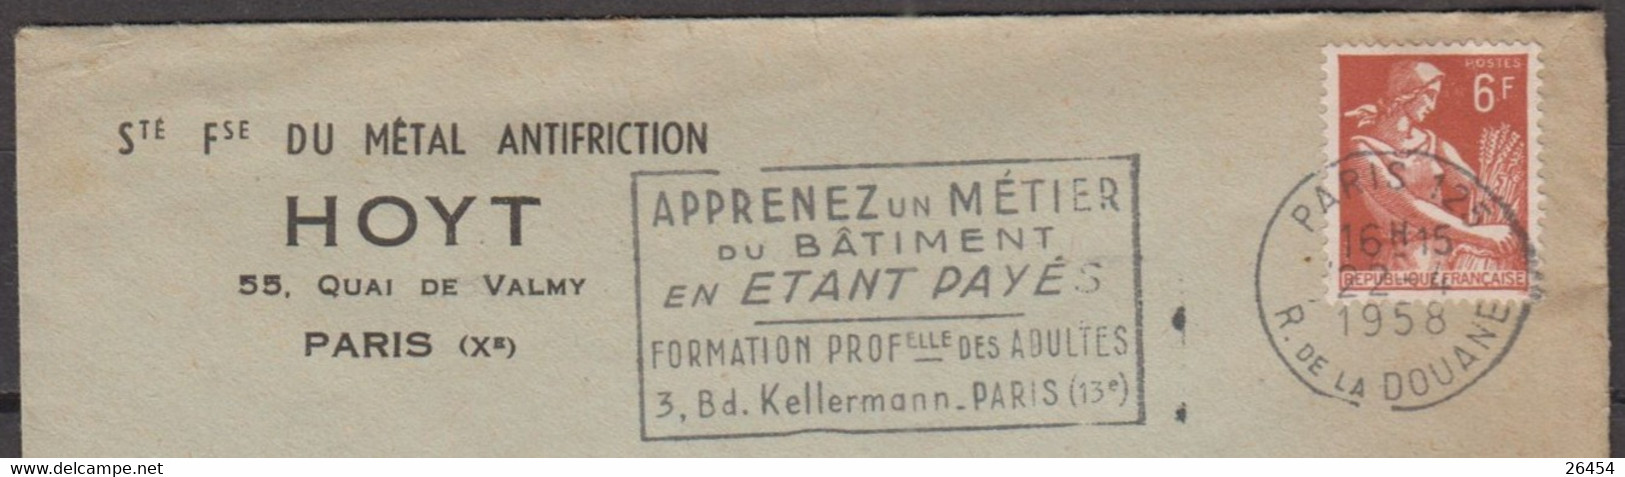 Moissonneuse  6F Sur Enveloppe Pub " Sté Fse Du METAL ANTIFRICTION " De PARIS X Le 22 4 1958 Avec Sécap De PARIS 125 - 1957-1959 Mäherin